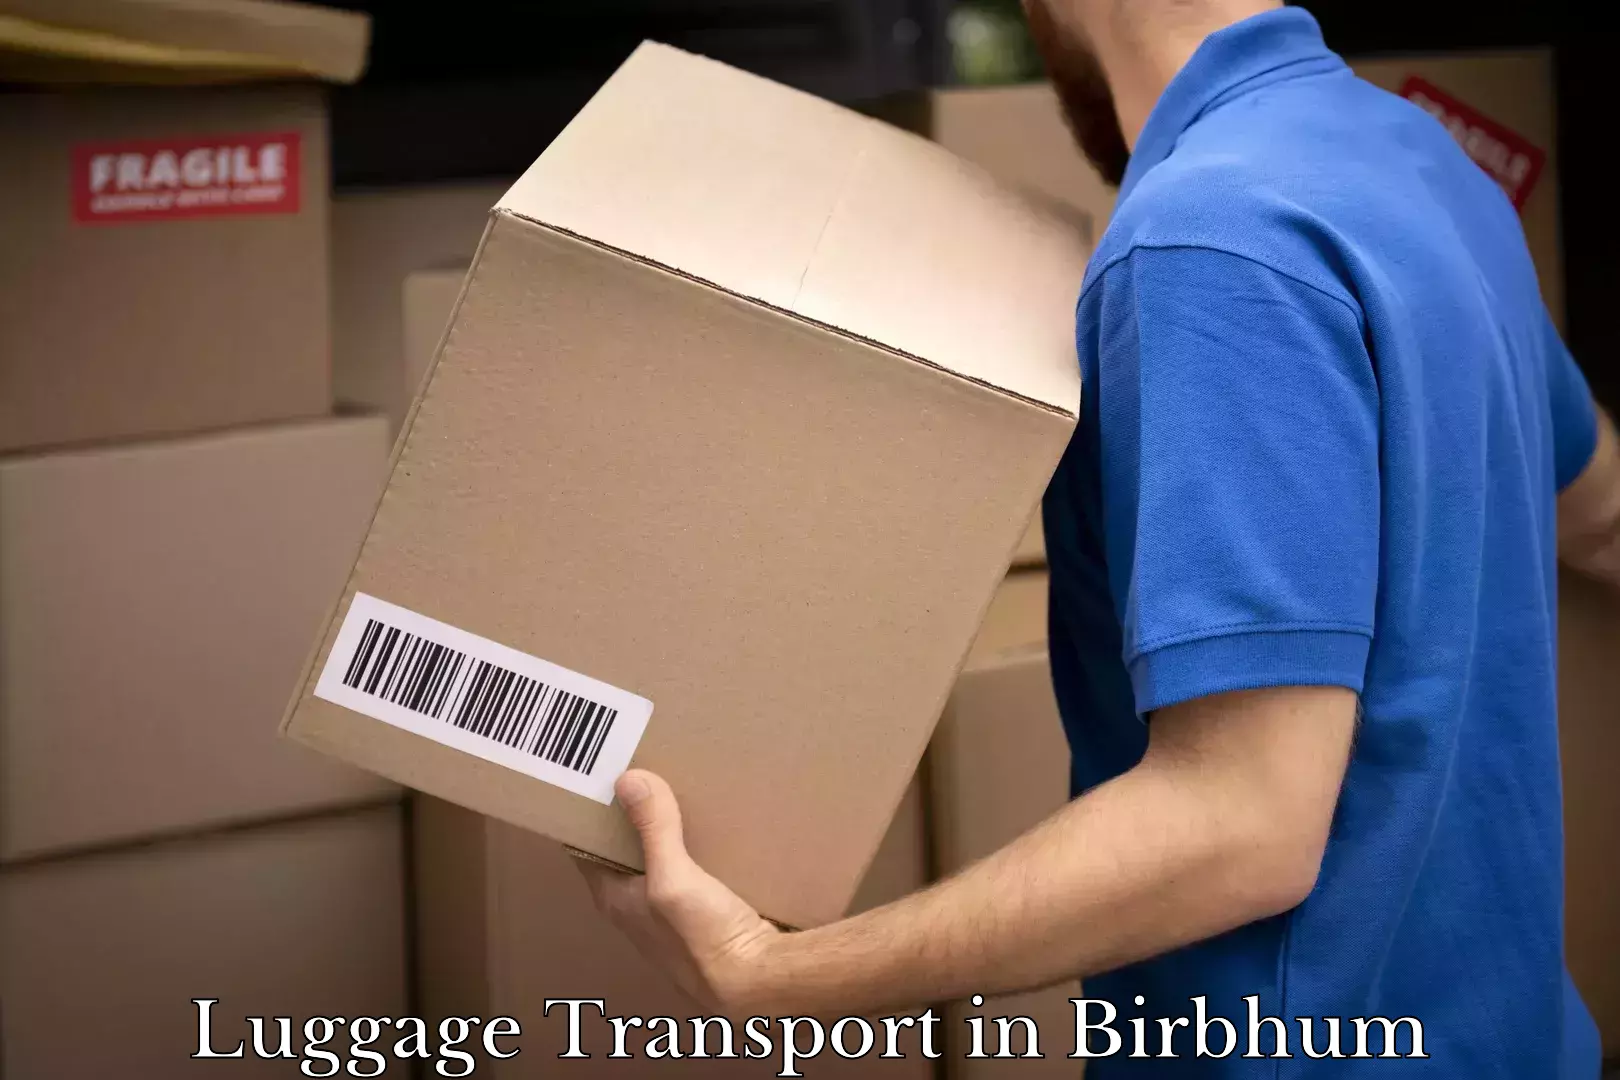 Luggage transport rates in Birbhum